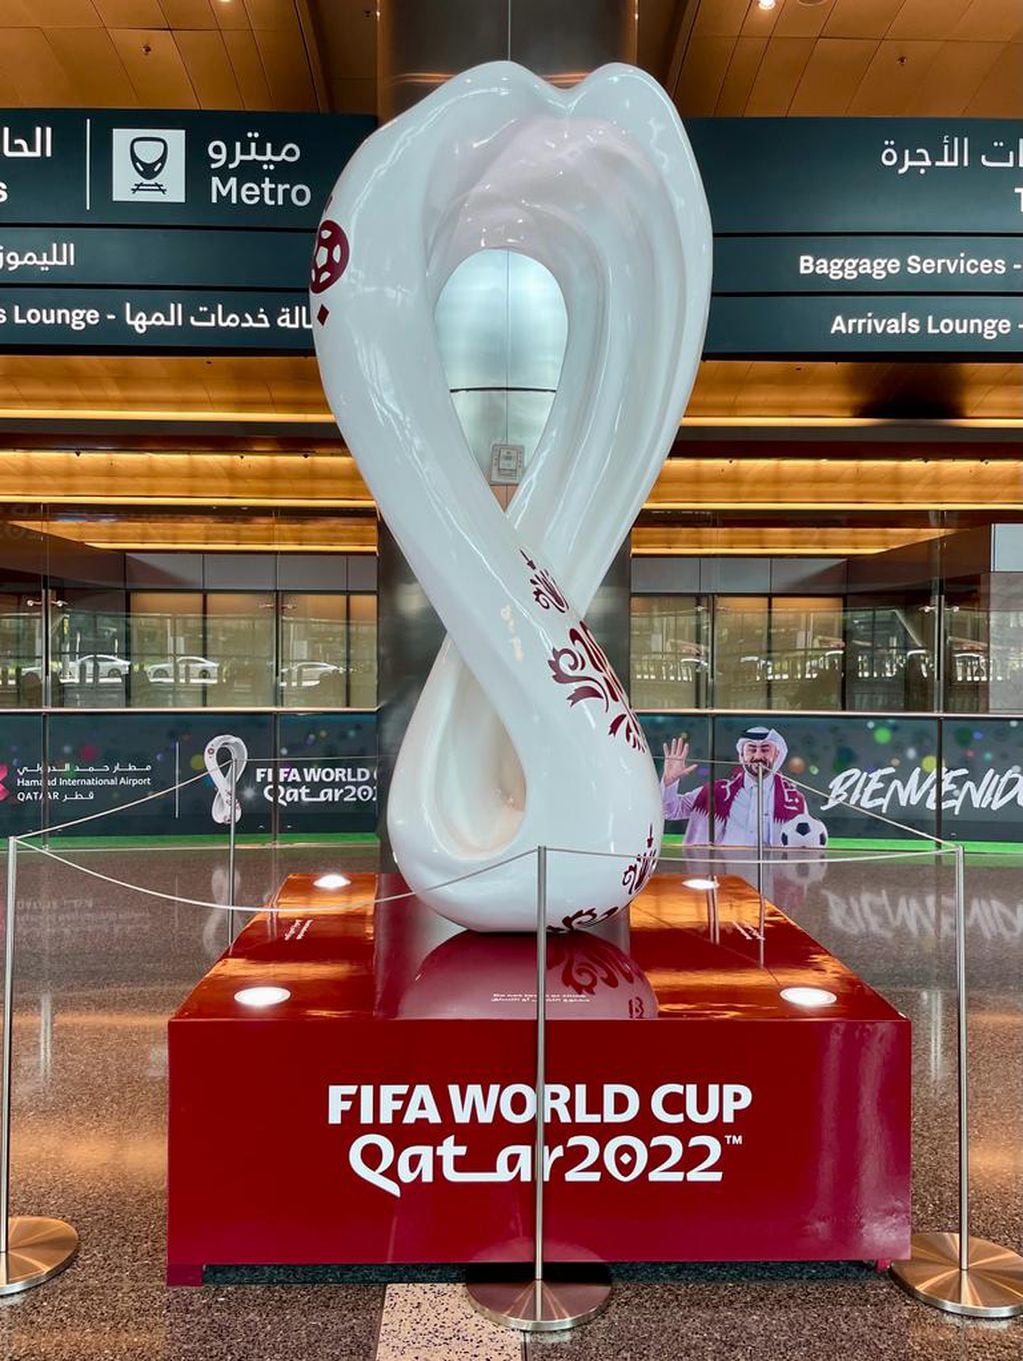 En el aeropuerto los fanáticos ya se encontrarán con todo tipo de imágenes y decoraciones alusivas al fútbol.